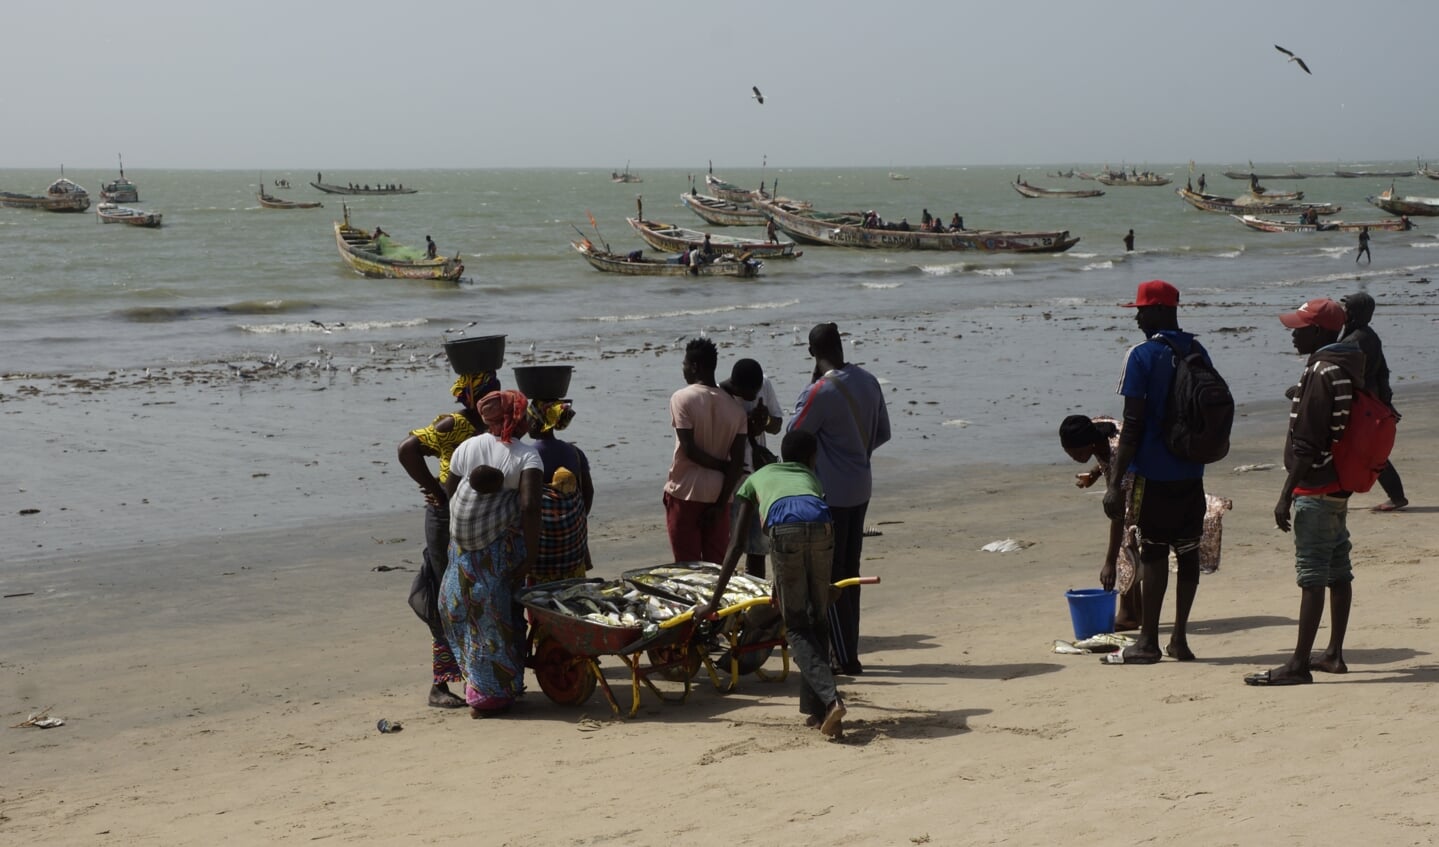 Tanji in Gambia. Ambachtelijke vissers in West-Afrika hebben de grootste
moeite om het hoofd boven water te houden door de komst van trawlers uit
Europa en Azië.